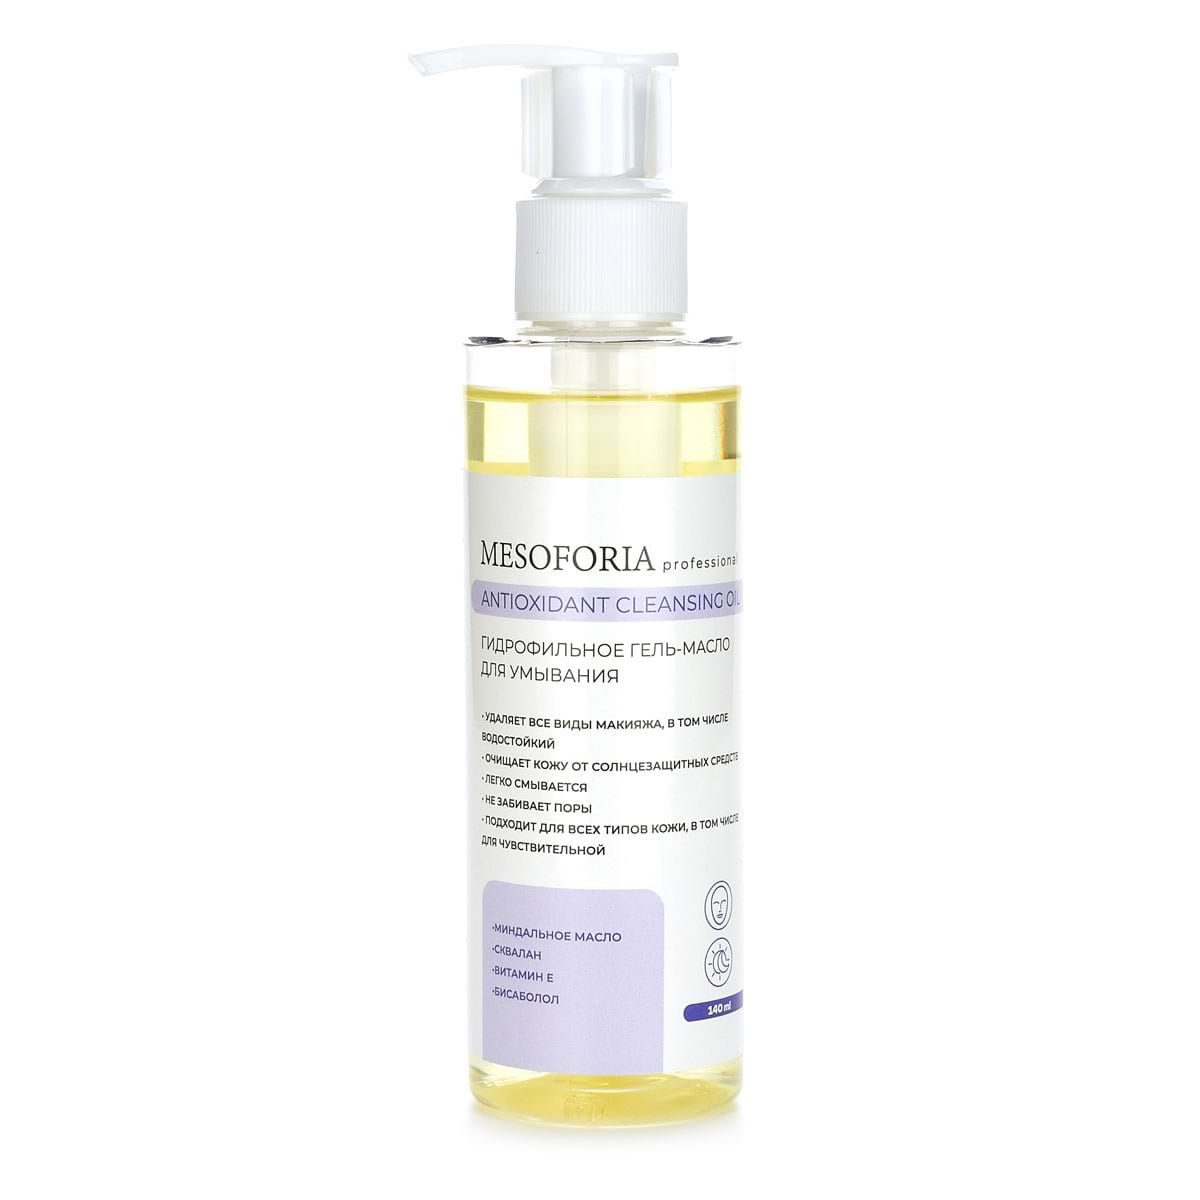 Antioxidant Cleansing Oil / Гидрофильное гель-масло для умывания, Mesoforia (Мезофория) – 140 мл